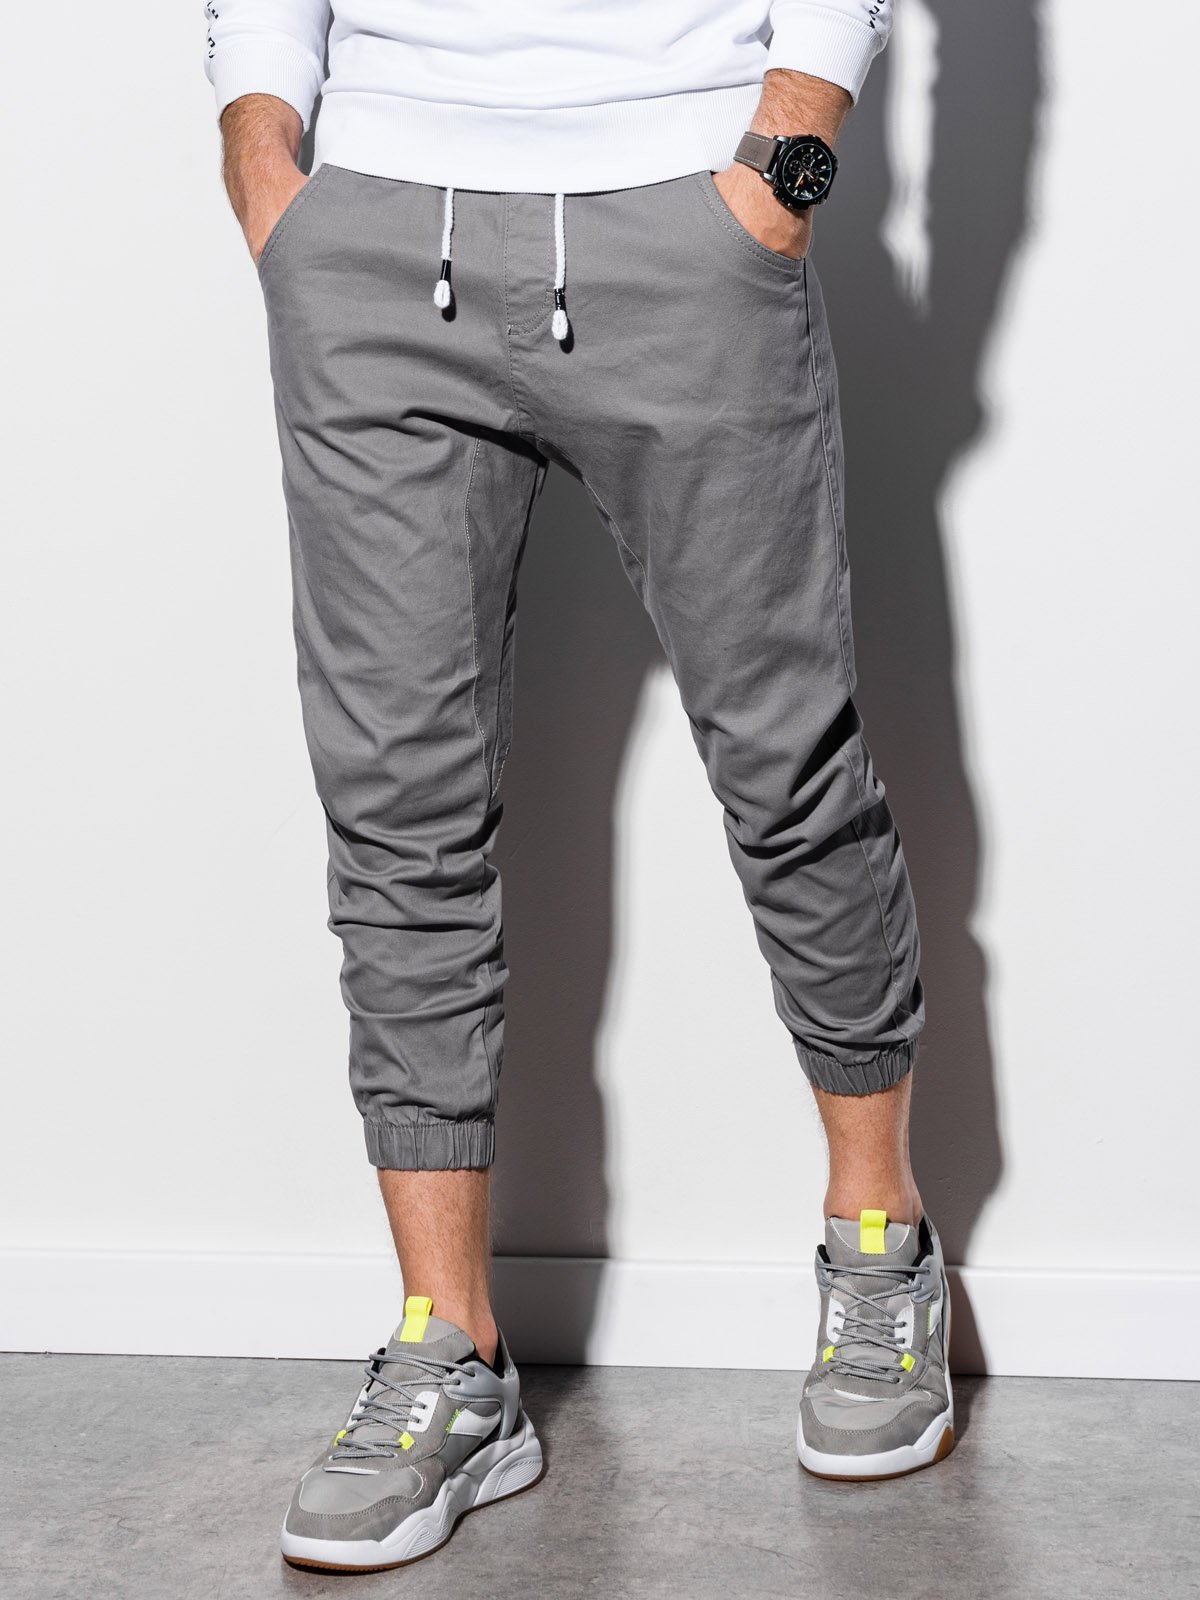 Men's pants joggers P731 - grey | MODONE wholesale - Clothing For Men